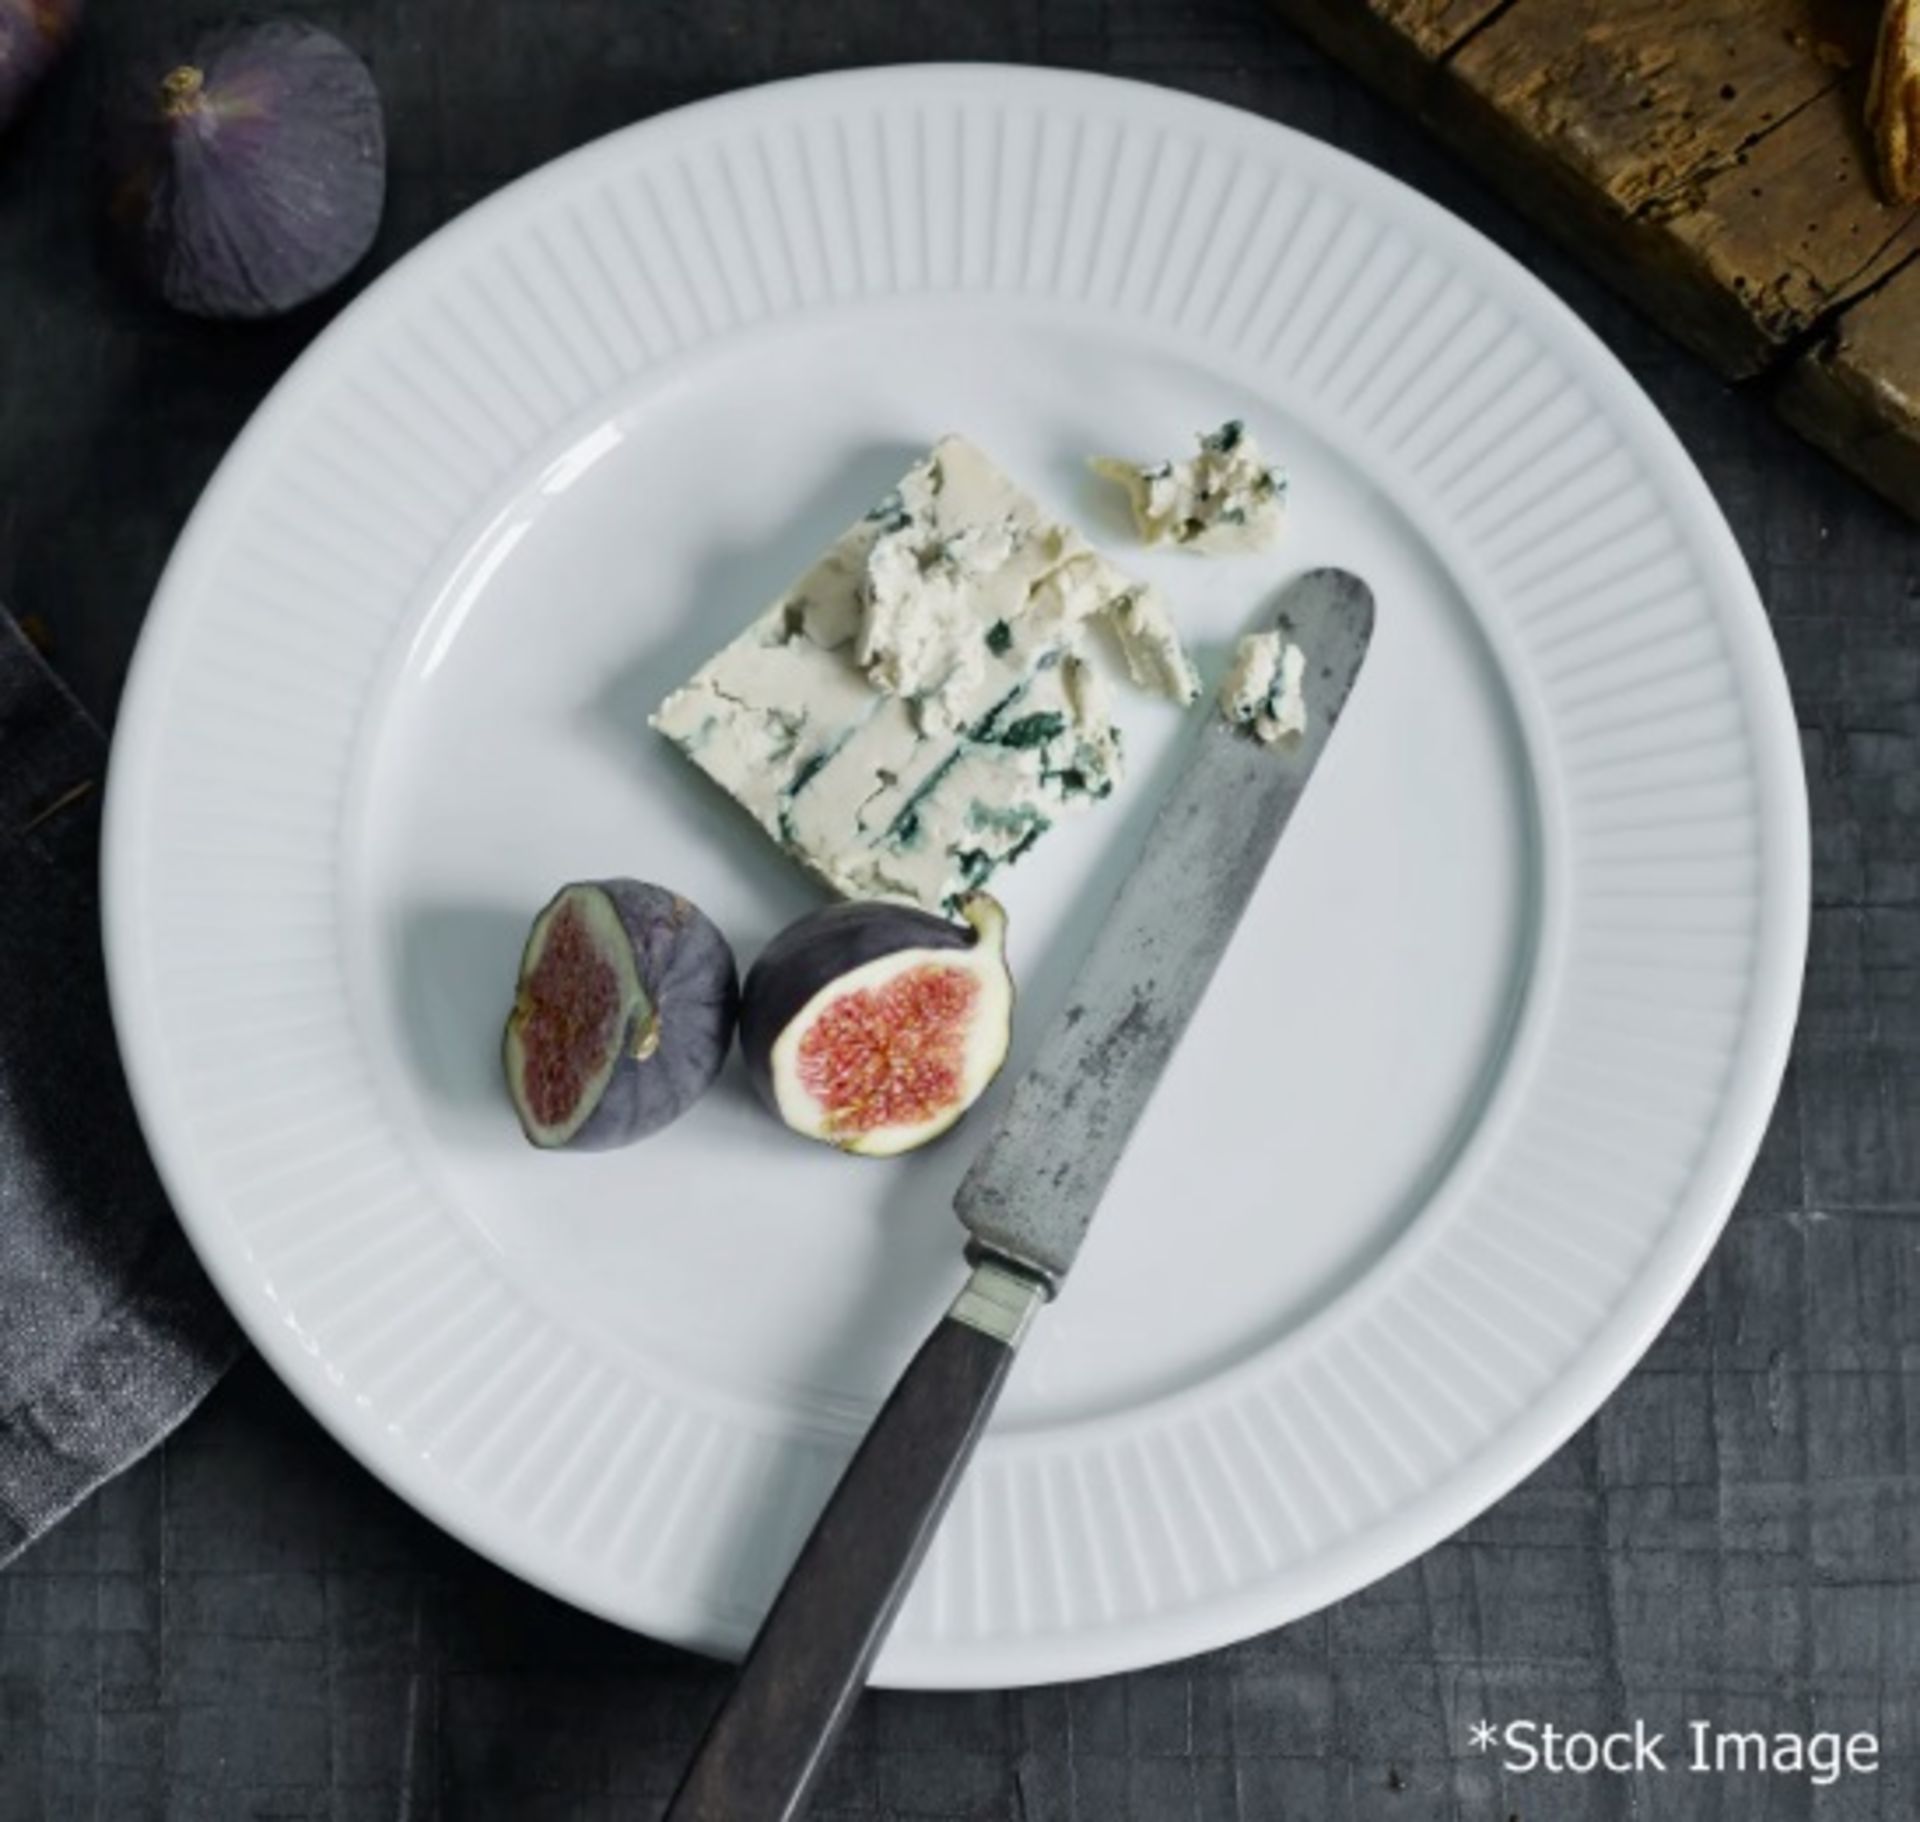 32 x PILLIVUYT 'Plisse' Porcelain Salad / Dessert Plates With A Pleated Design - Dimensions: 25.